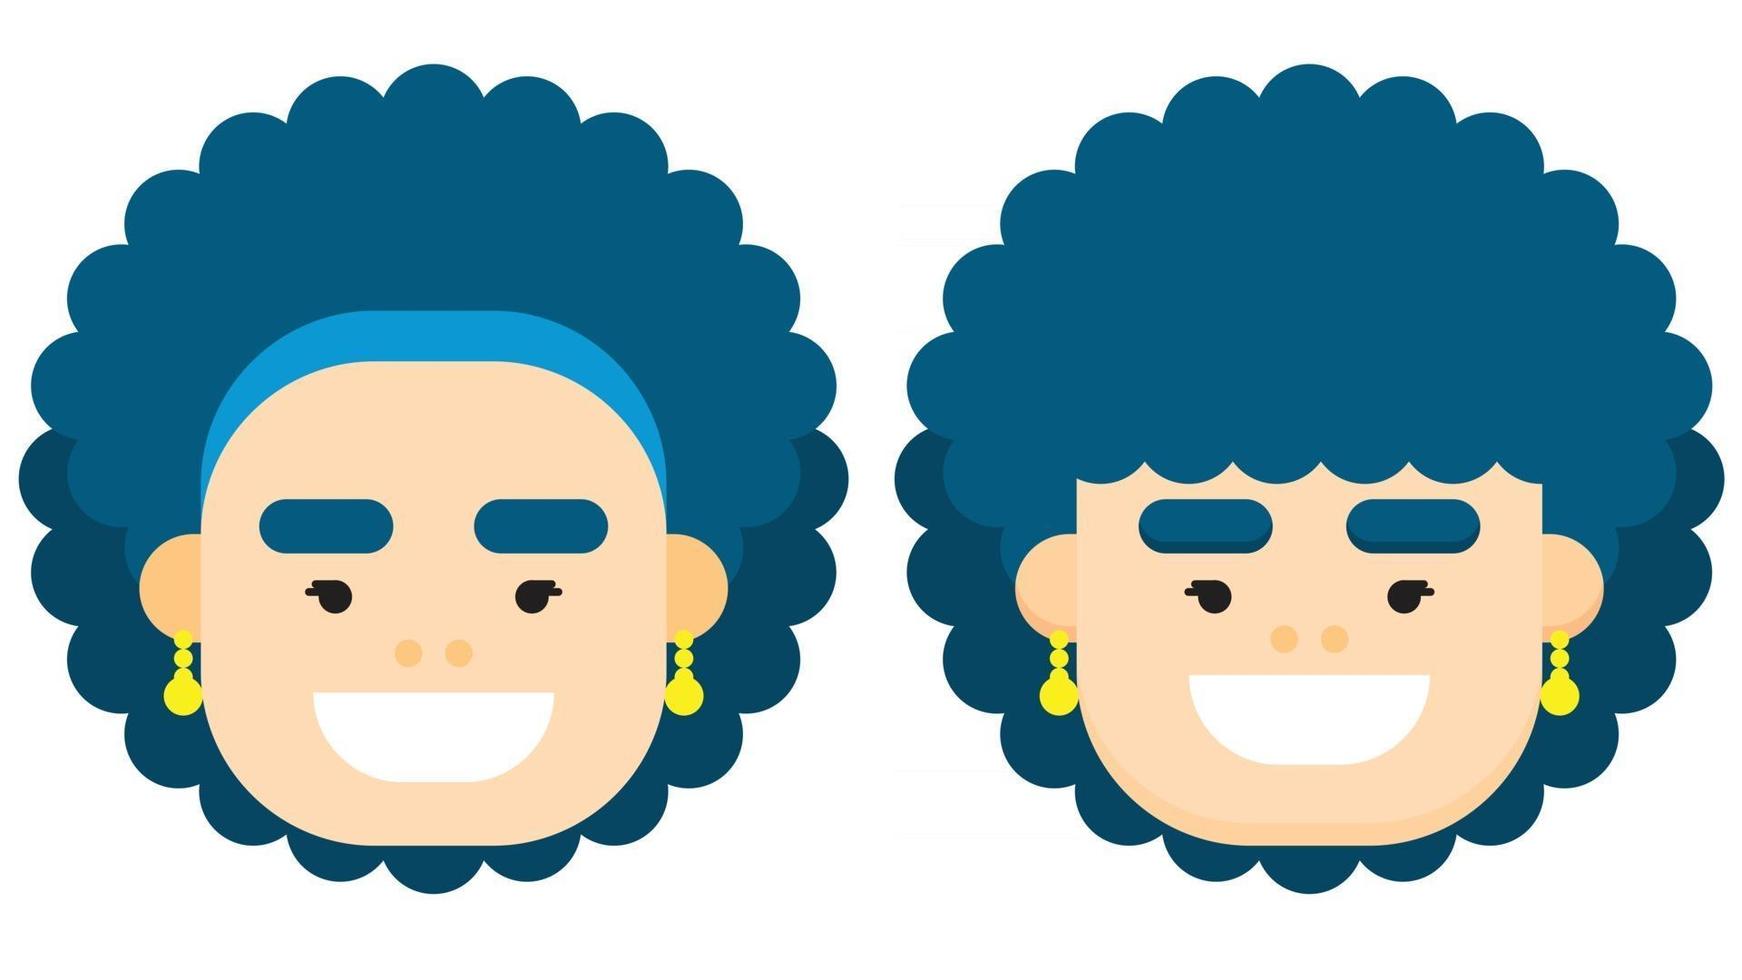 rosto de mulher design plano com cabelo azul encaracolado, com estilos diferentes. ilustração vetorial. vetor